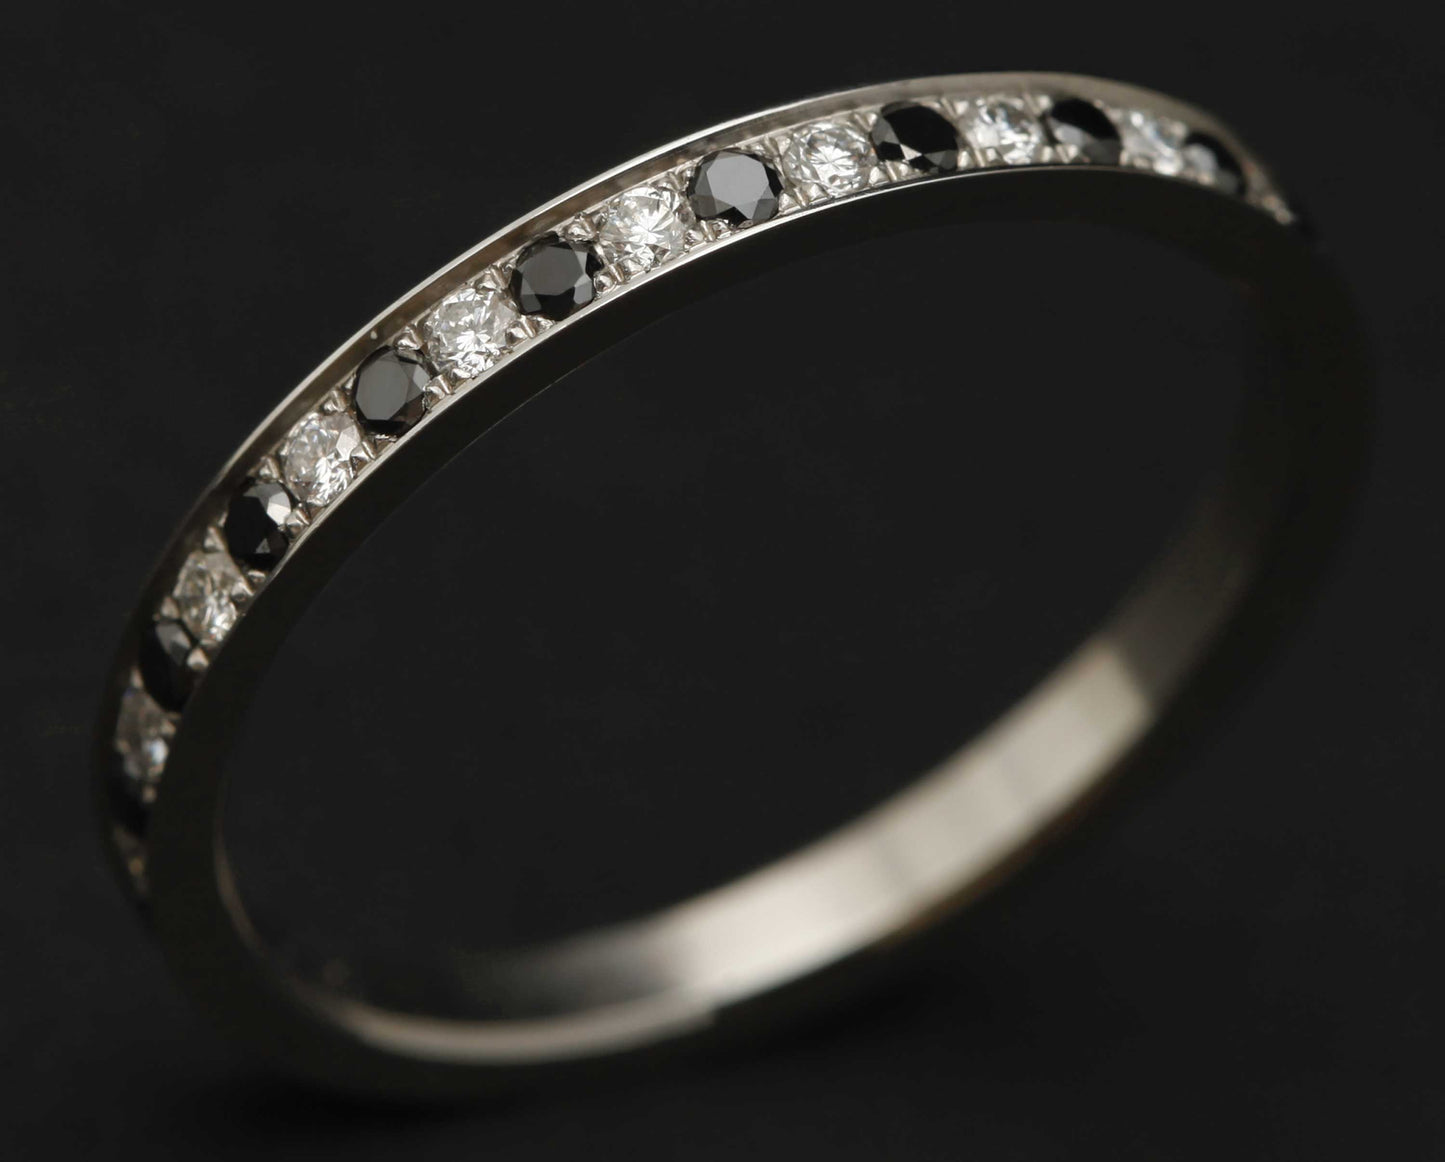 Addon medium acier entièrement serti de diamants et diamants noirs 1.6 mm